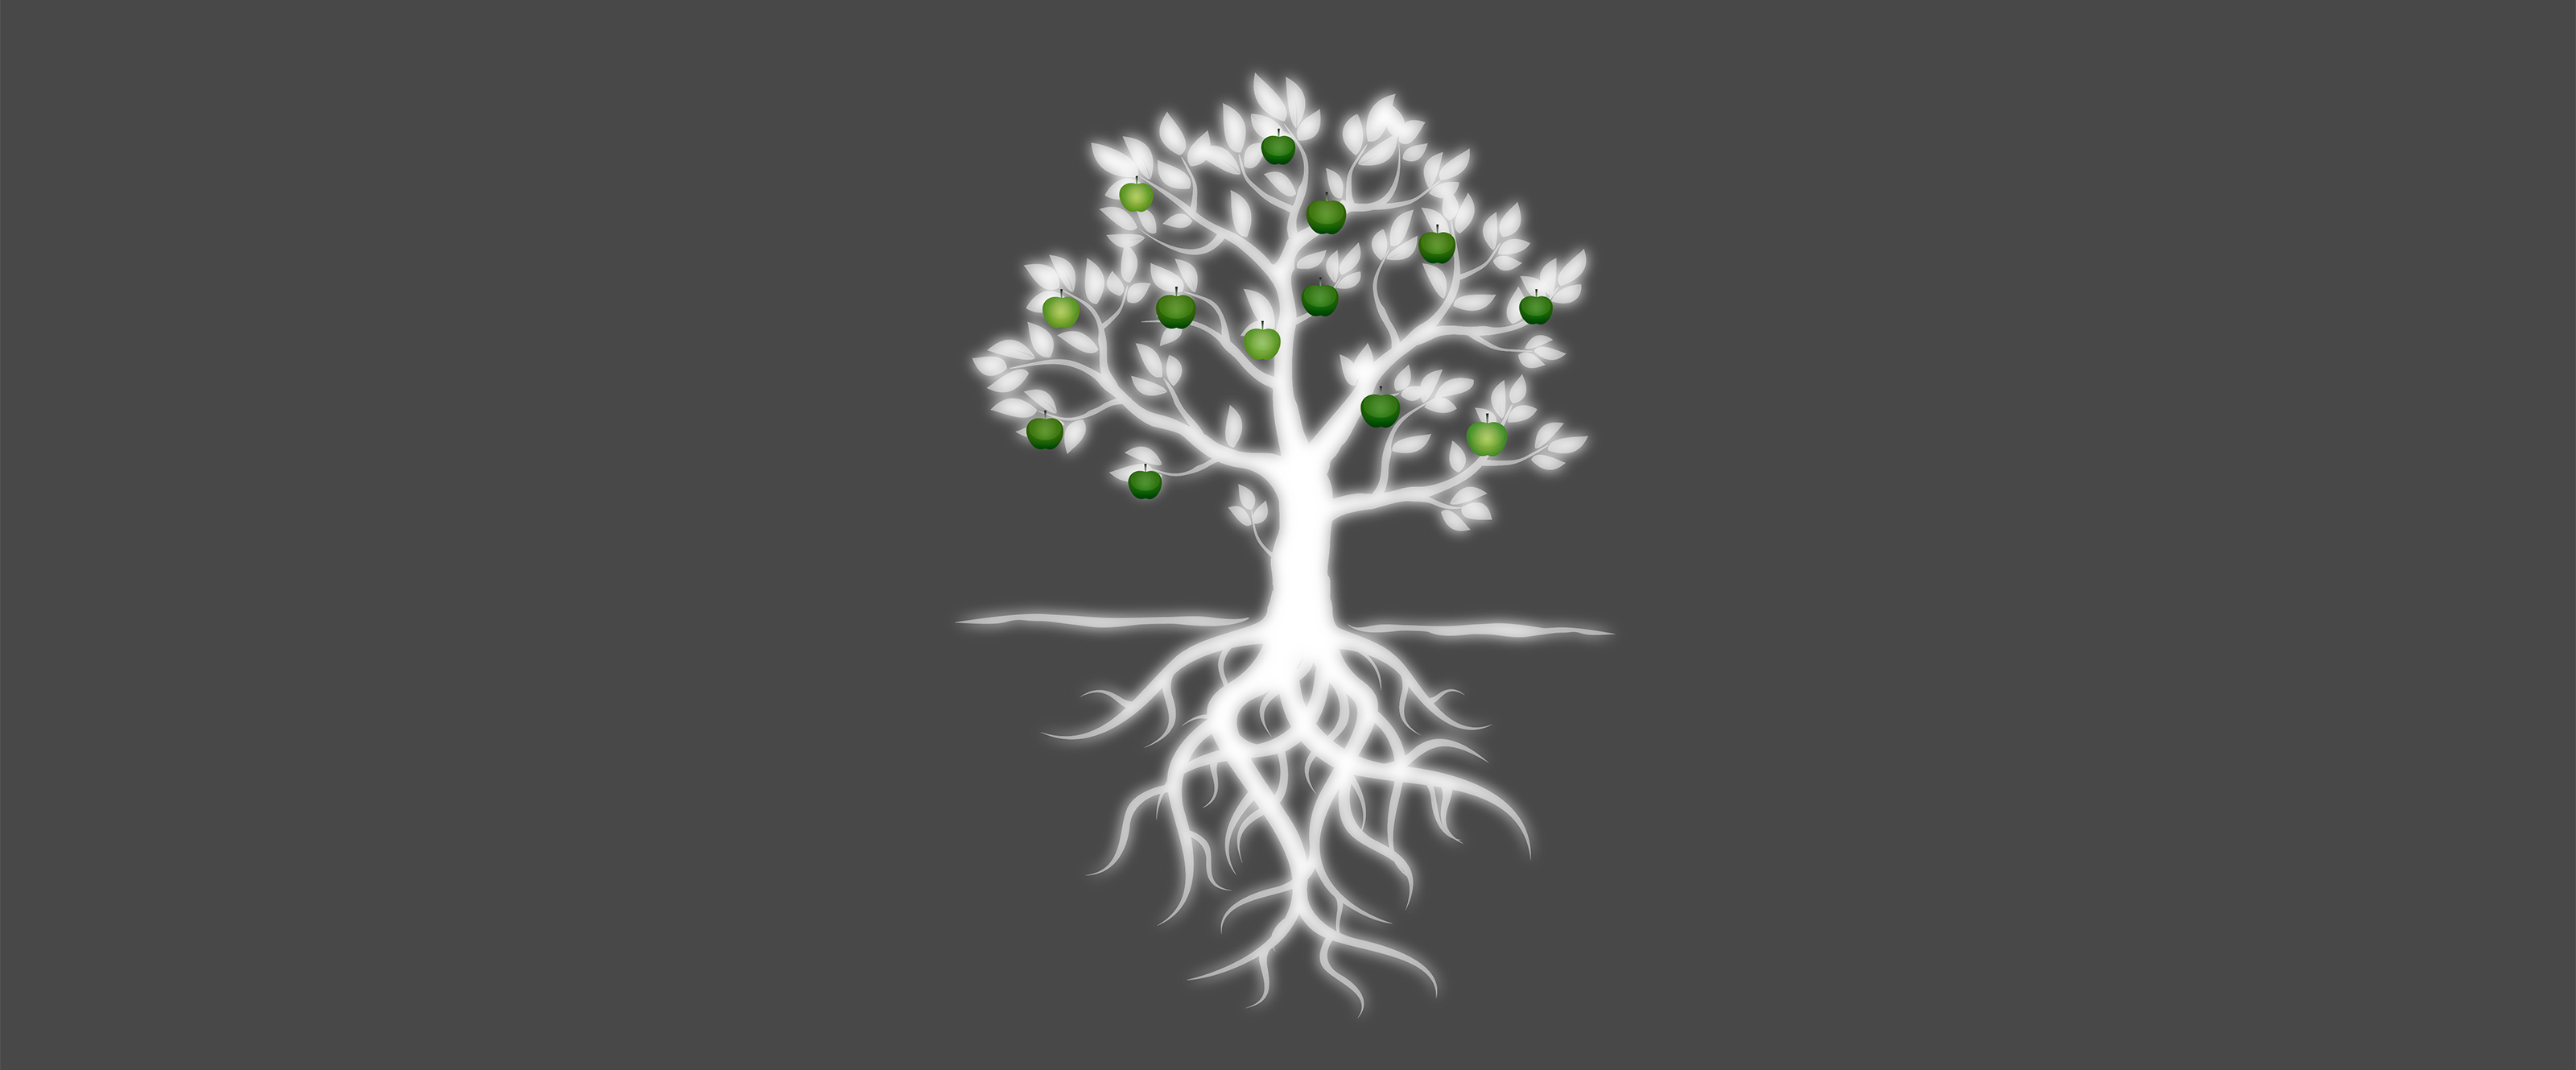 Der Baum als Symbol für eine gewachsenes, lebendiges Unternehmen wie die lignotec MassivHolz GmbH, Sargfabrik in Berlin